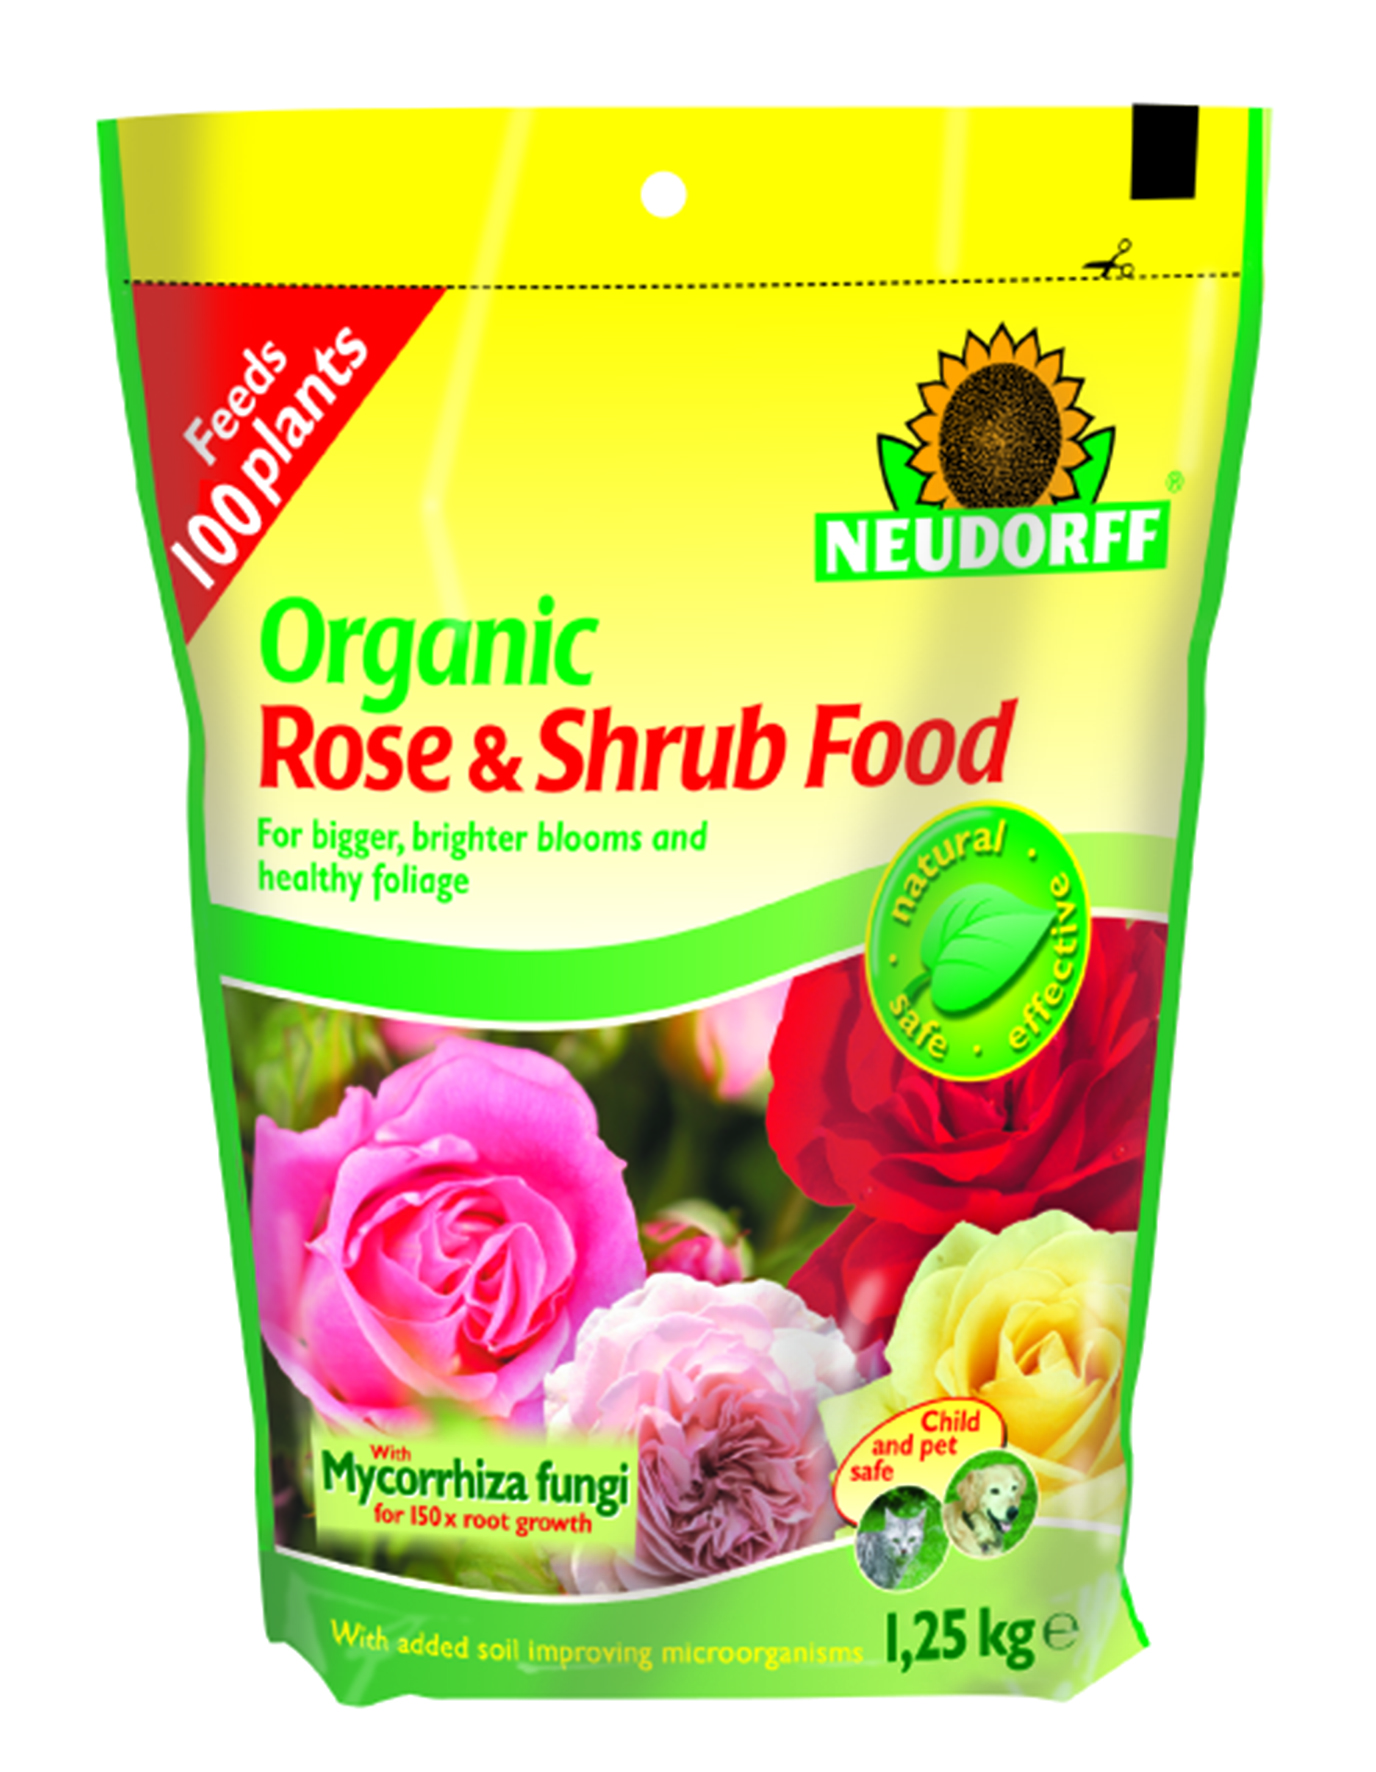 Neudorff Organic Rose Shrub Plant Food with Mycorrhiza 125 kg POUCH BAG